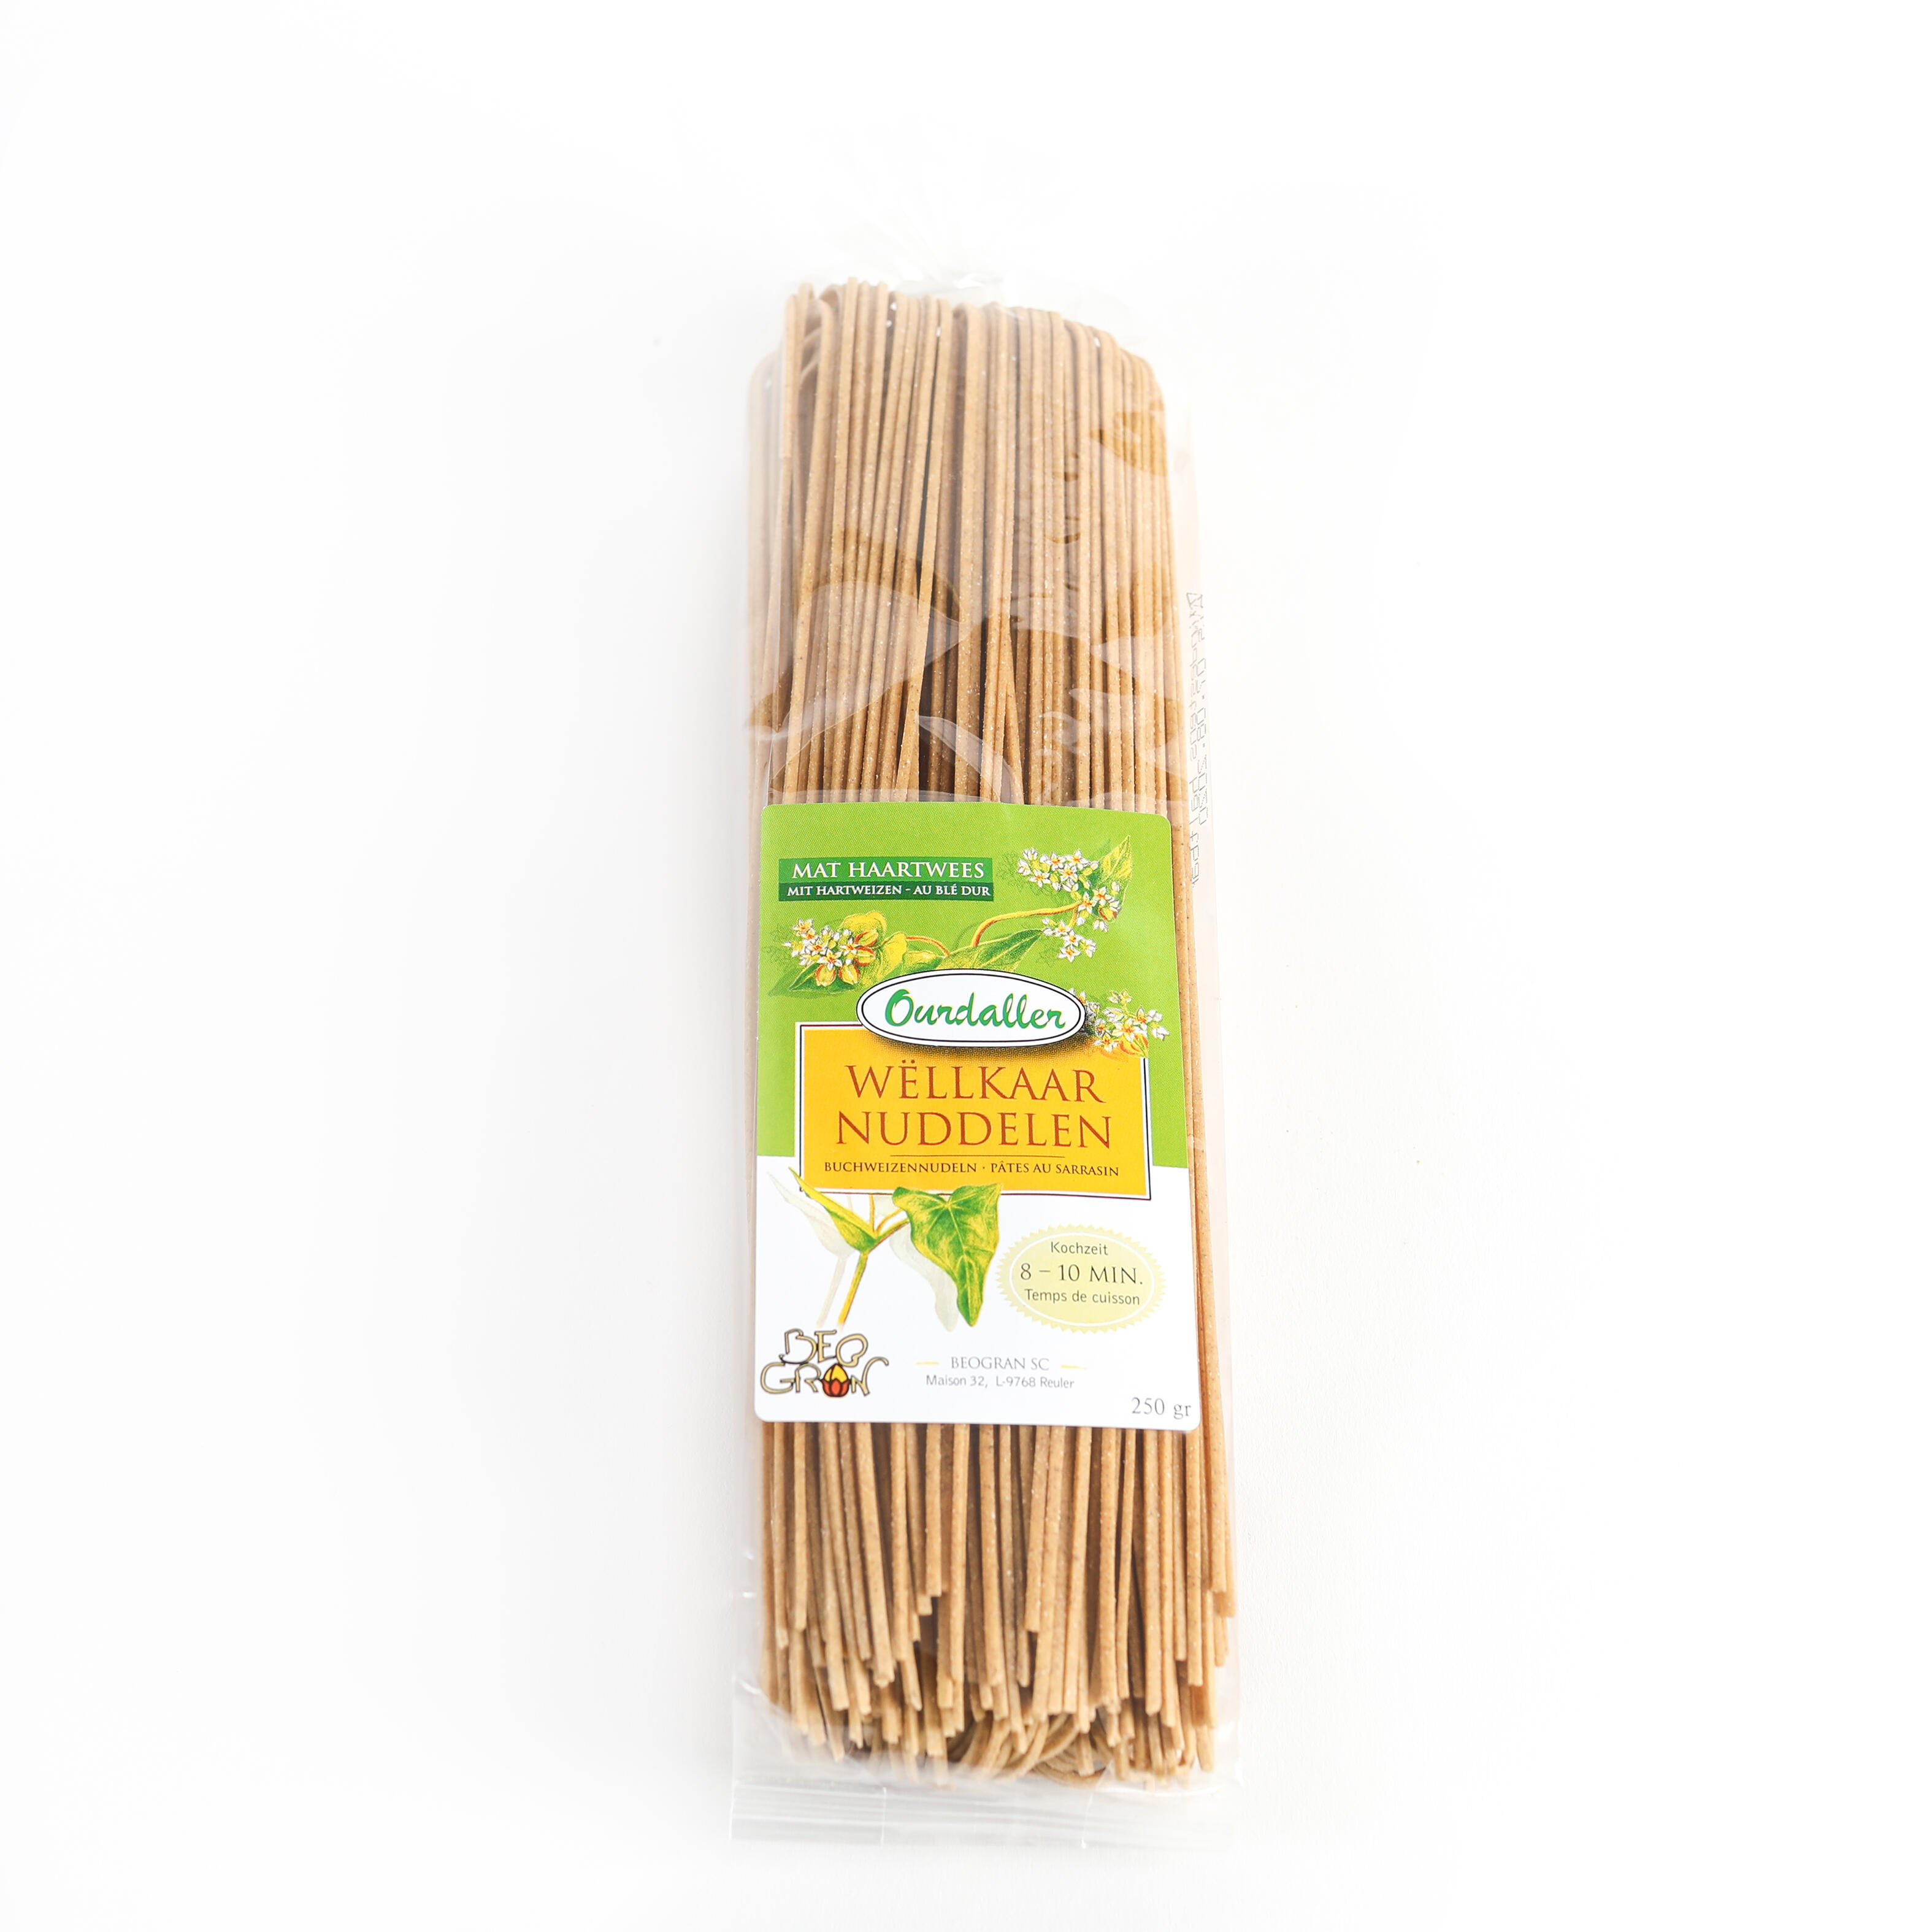 Buckwheat pasta "SPAGHETTI" with durum wheat semolina